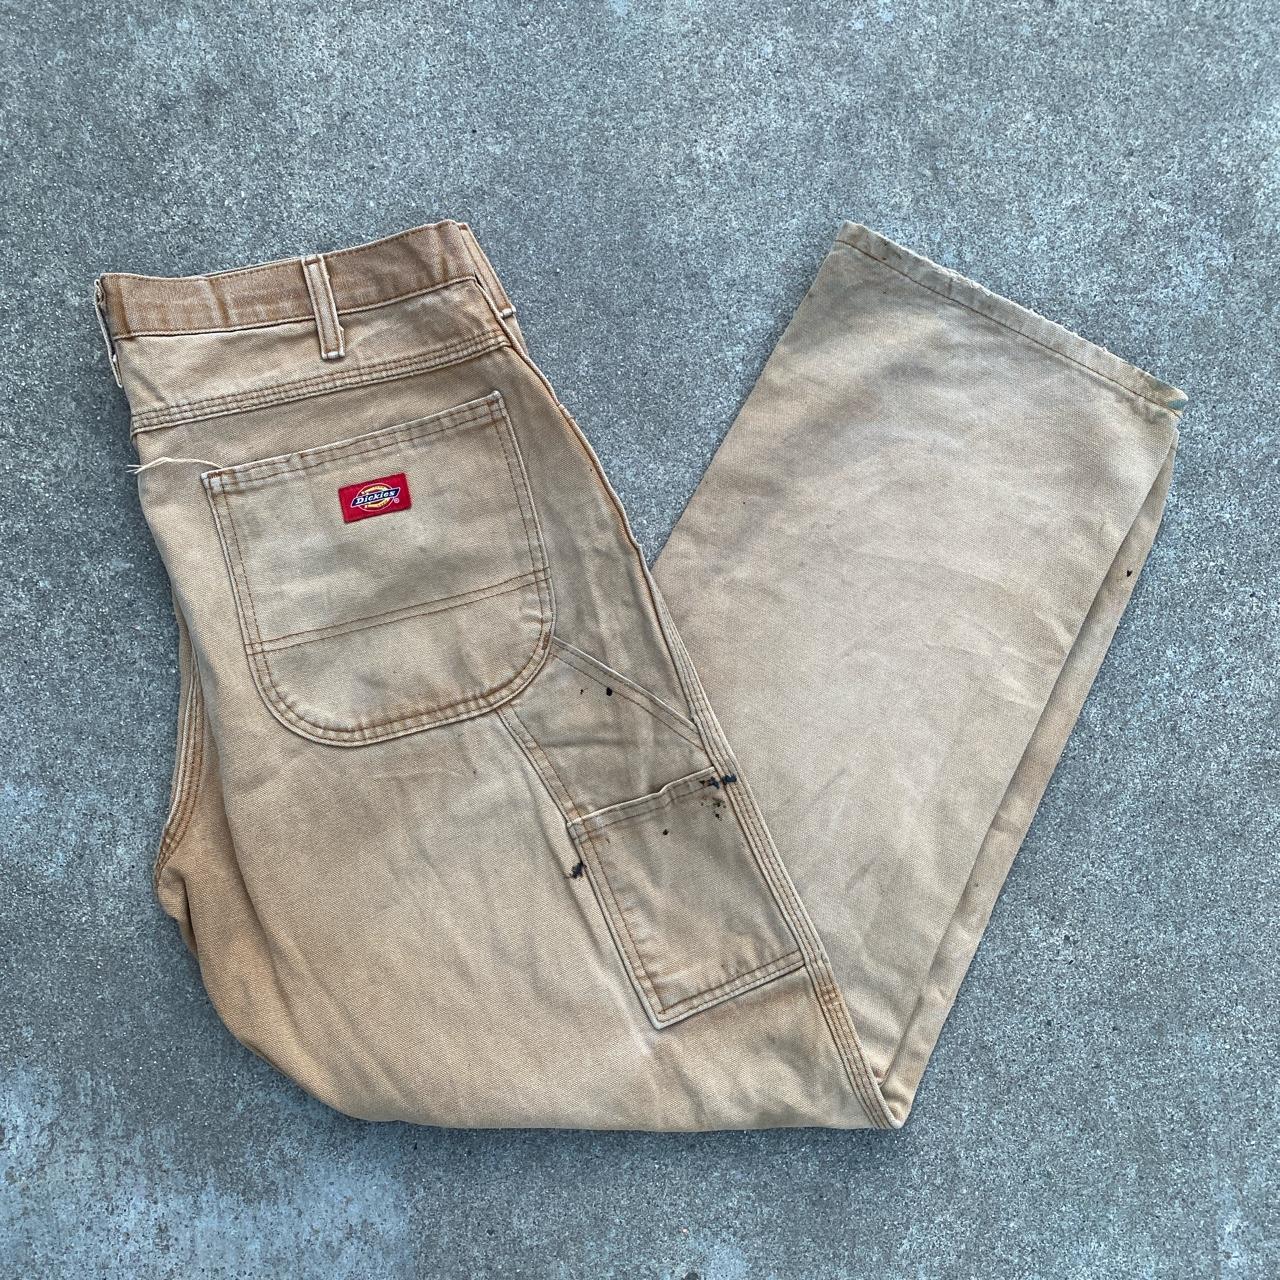 Vintage Dickies Tan Cargo Pants Measurements 34/30 - Depop